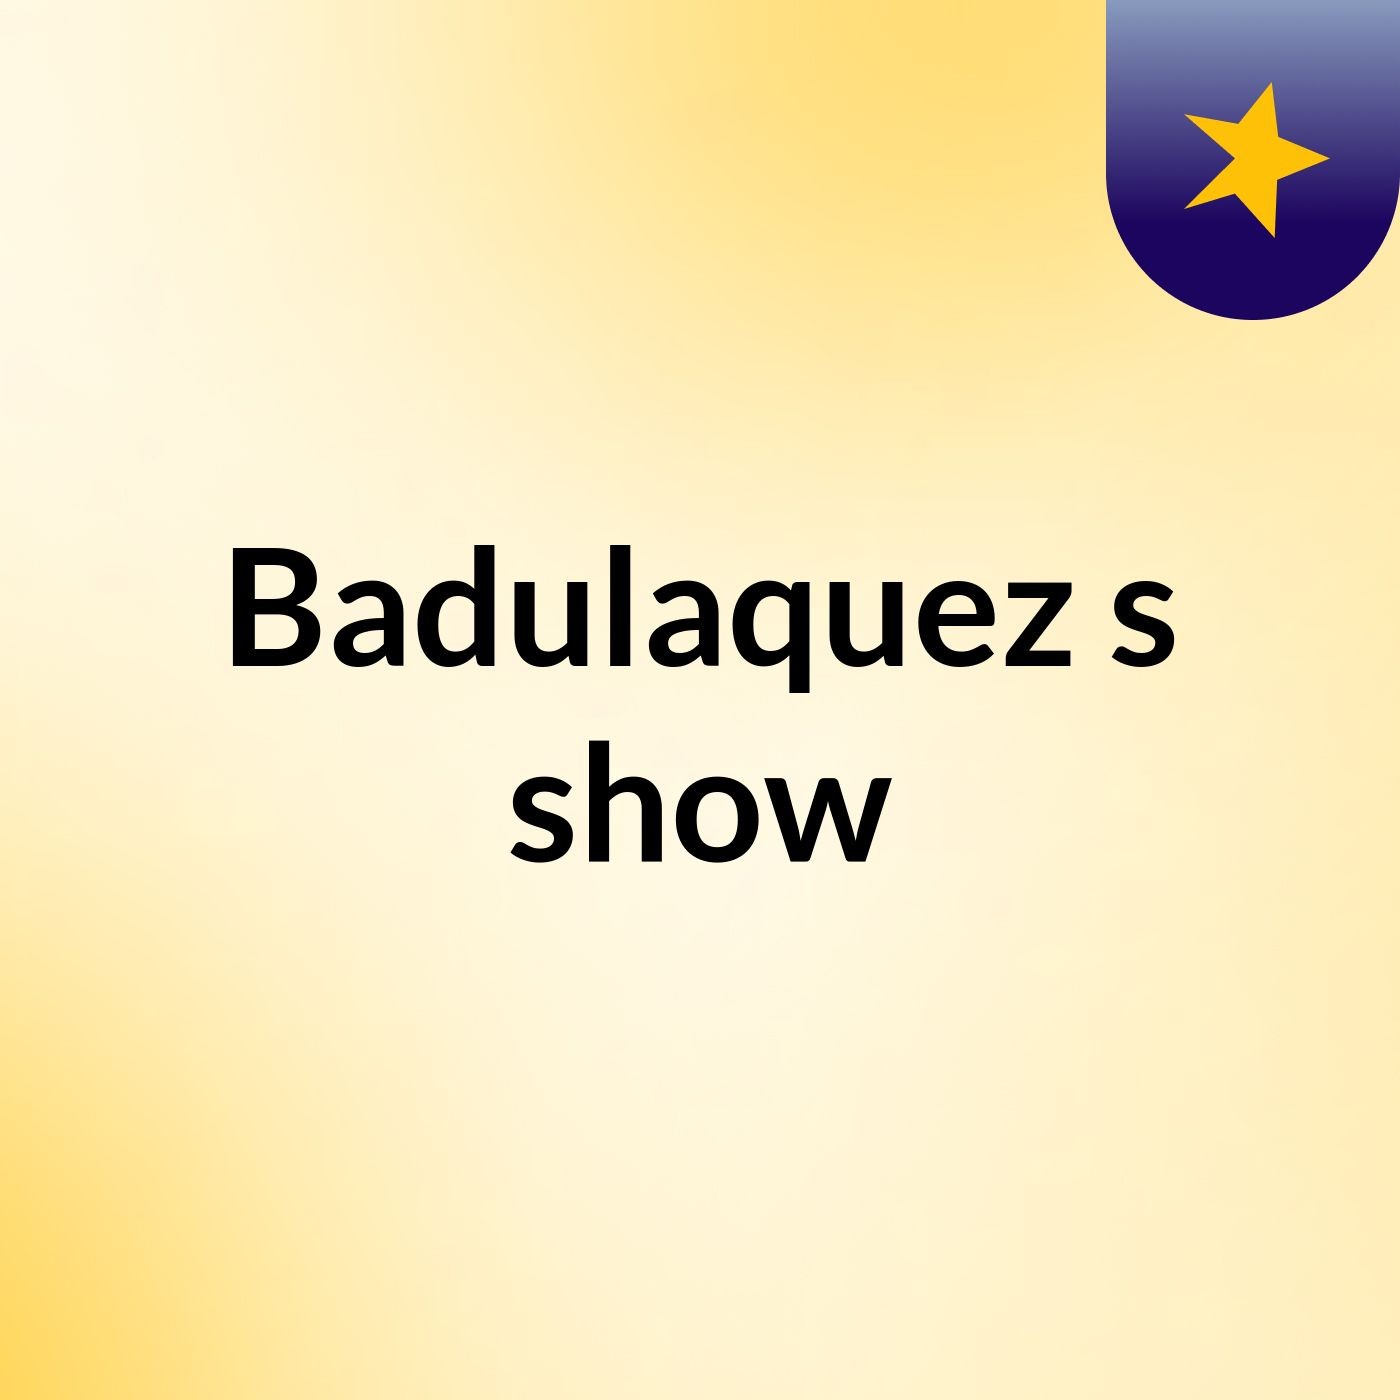 Badulaquez's show